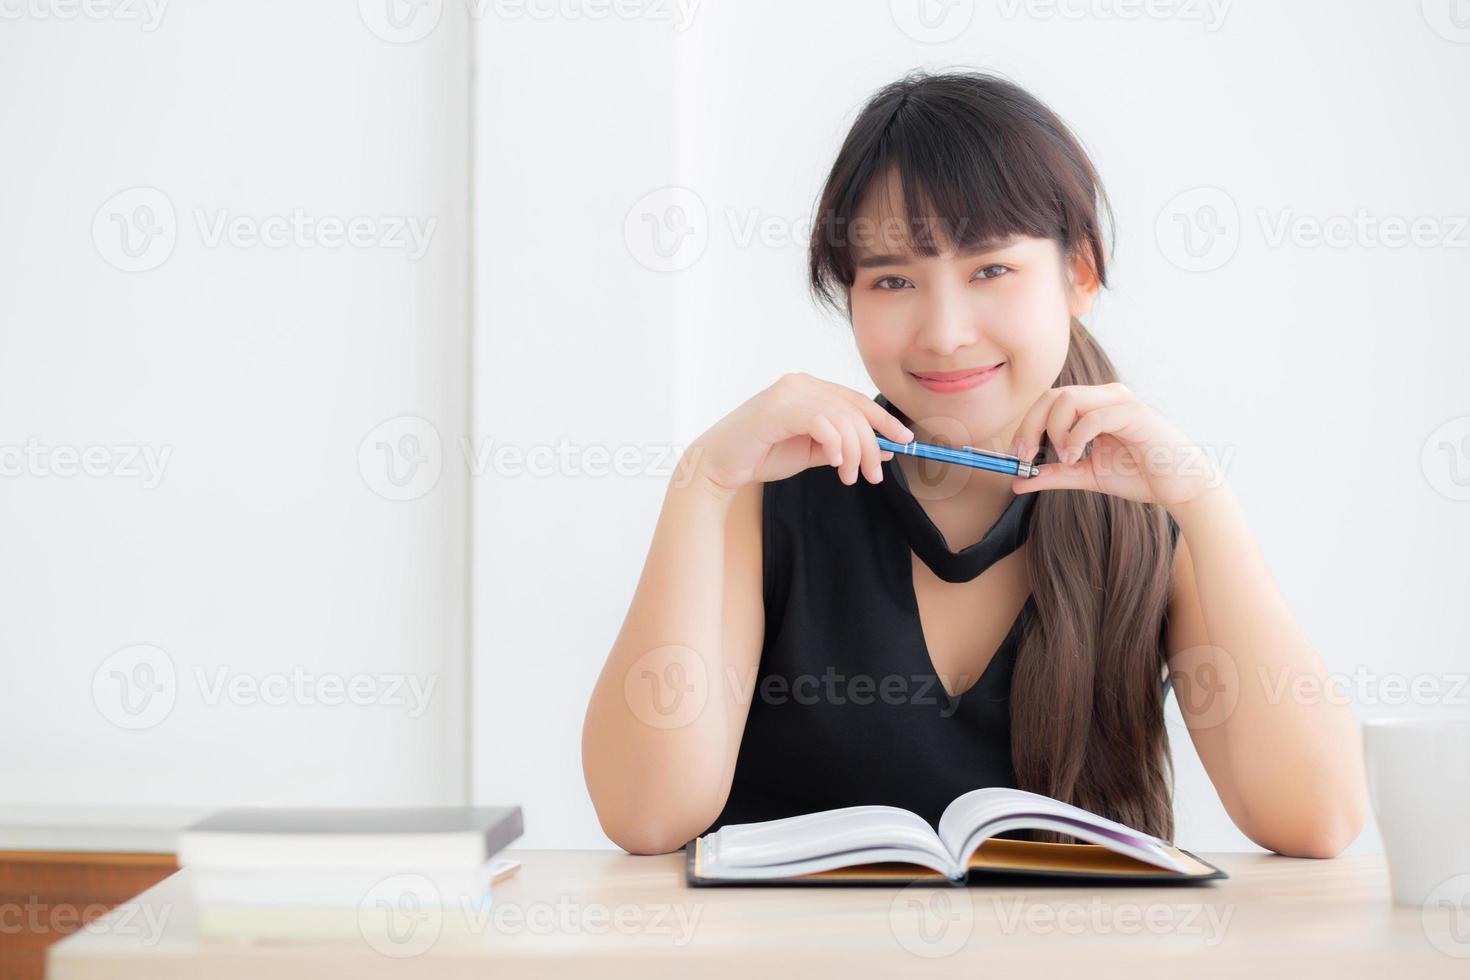 hermoso retrato joven mujer asiática sonriendo sentada estudiando y aprendiendo a escribir cuaderno y diario en la sala de estar en casa, tarea de niña, mujer de negocios trabajando en la mesa, concepto de educación. foto